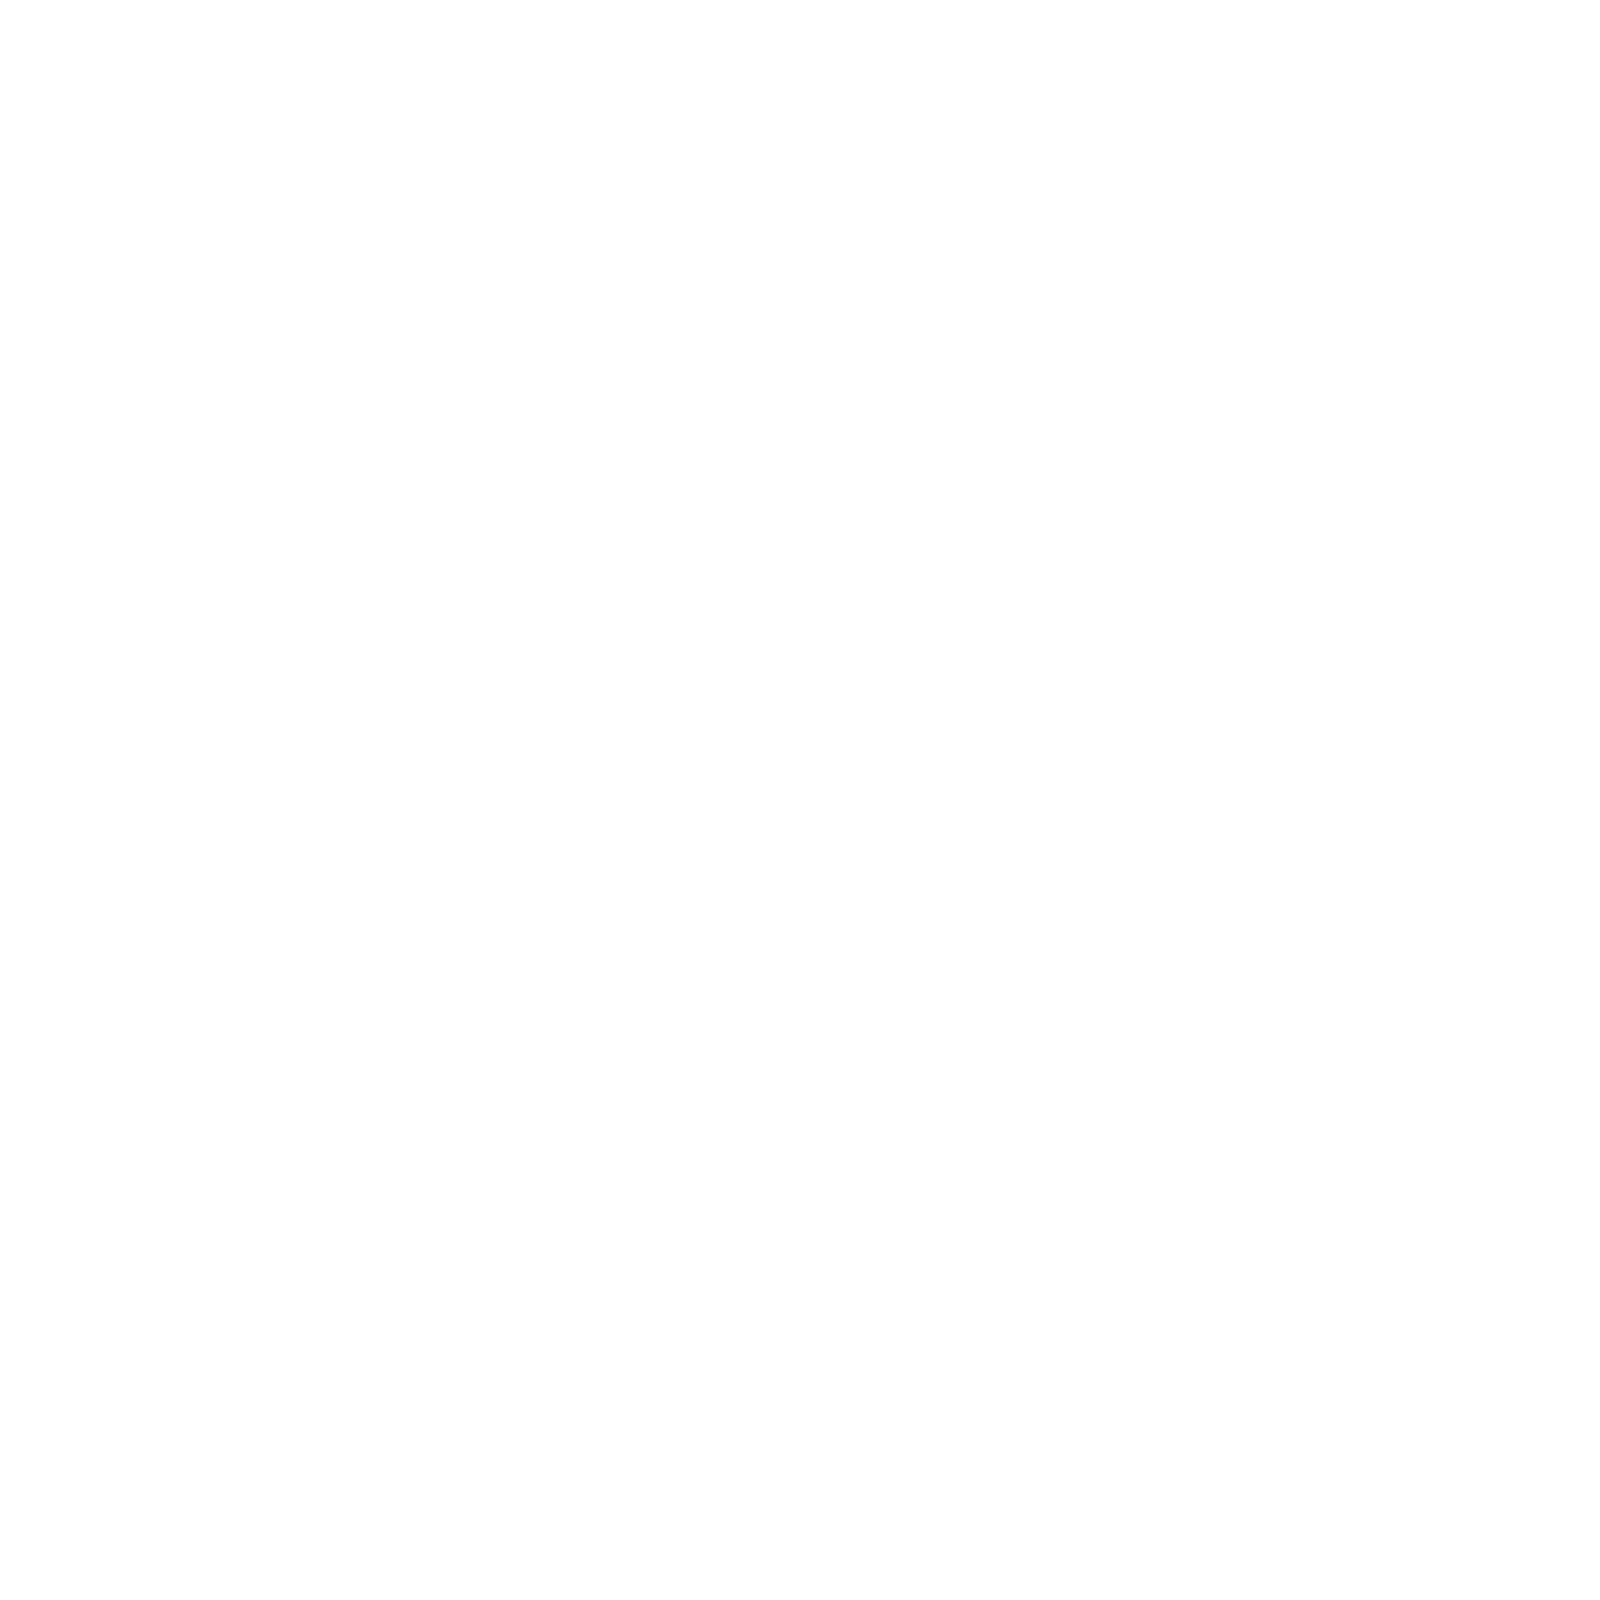 Flickplay